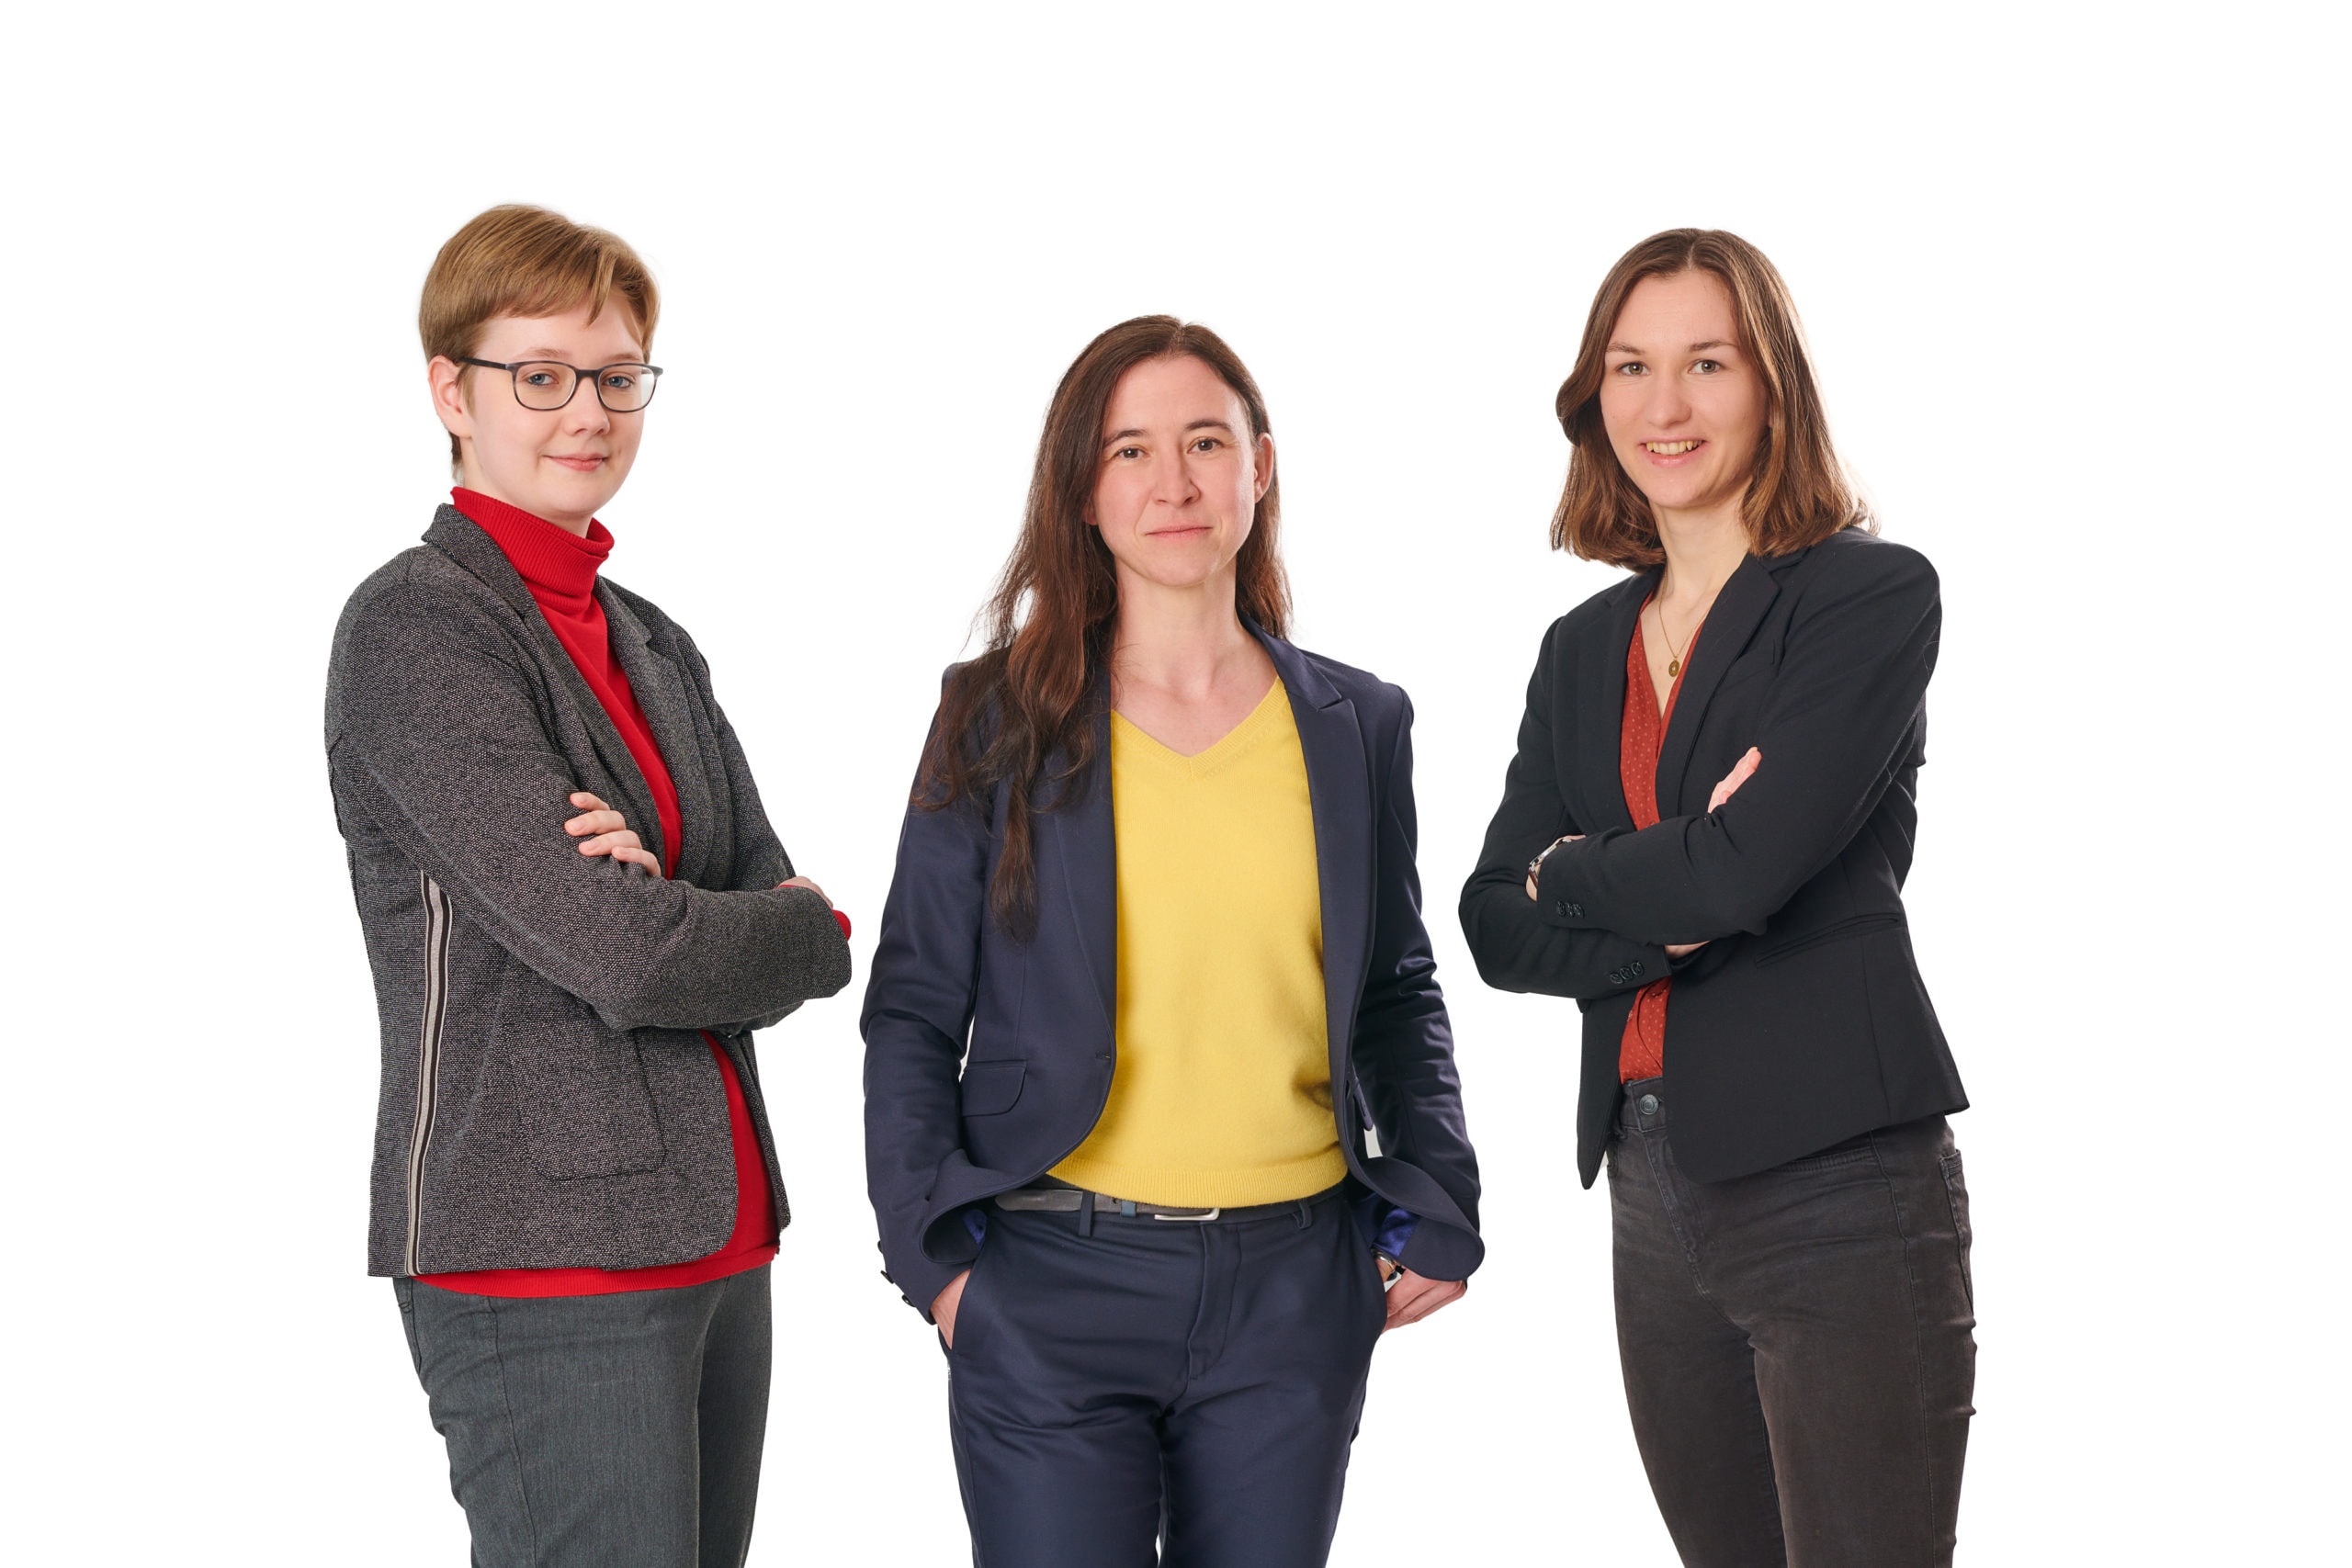 Foto vom avesco Analyse-Team. Drei junge Frauen schauen vor weißen Hintergrund in die Kamera